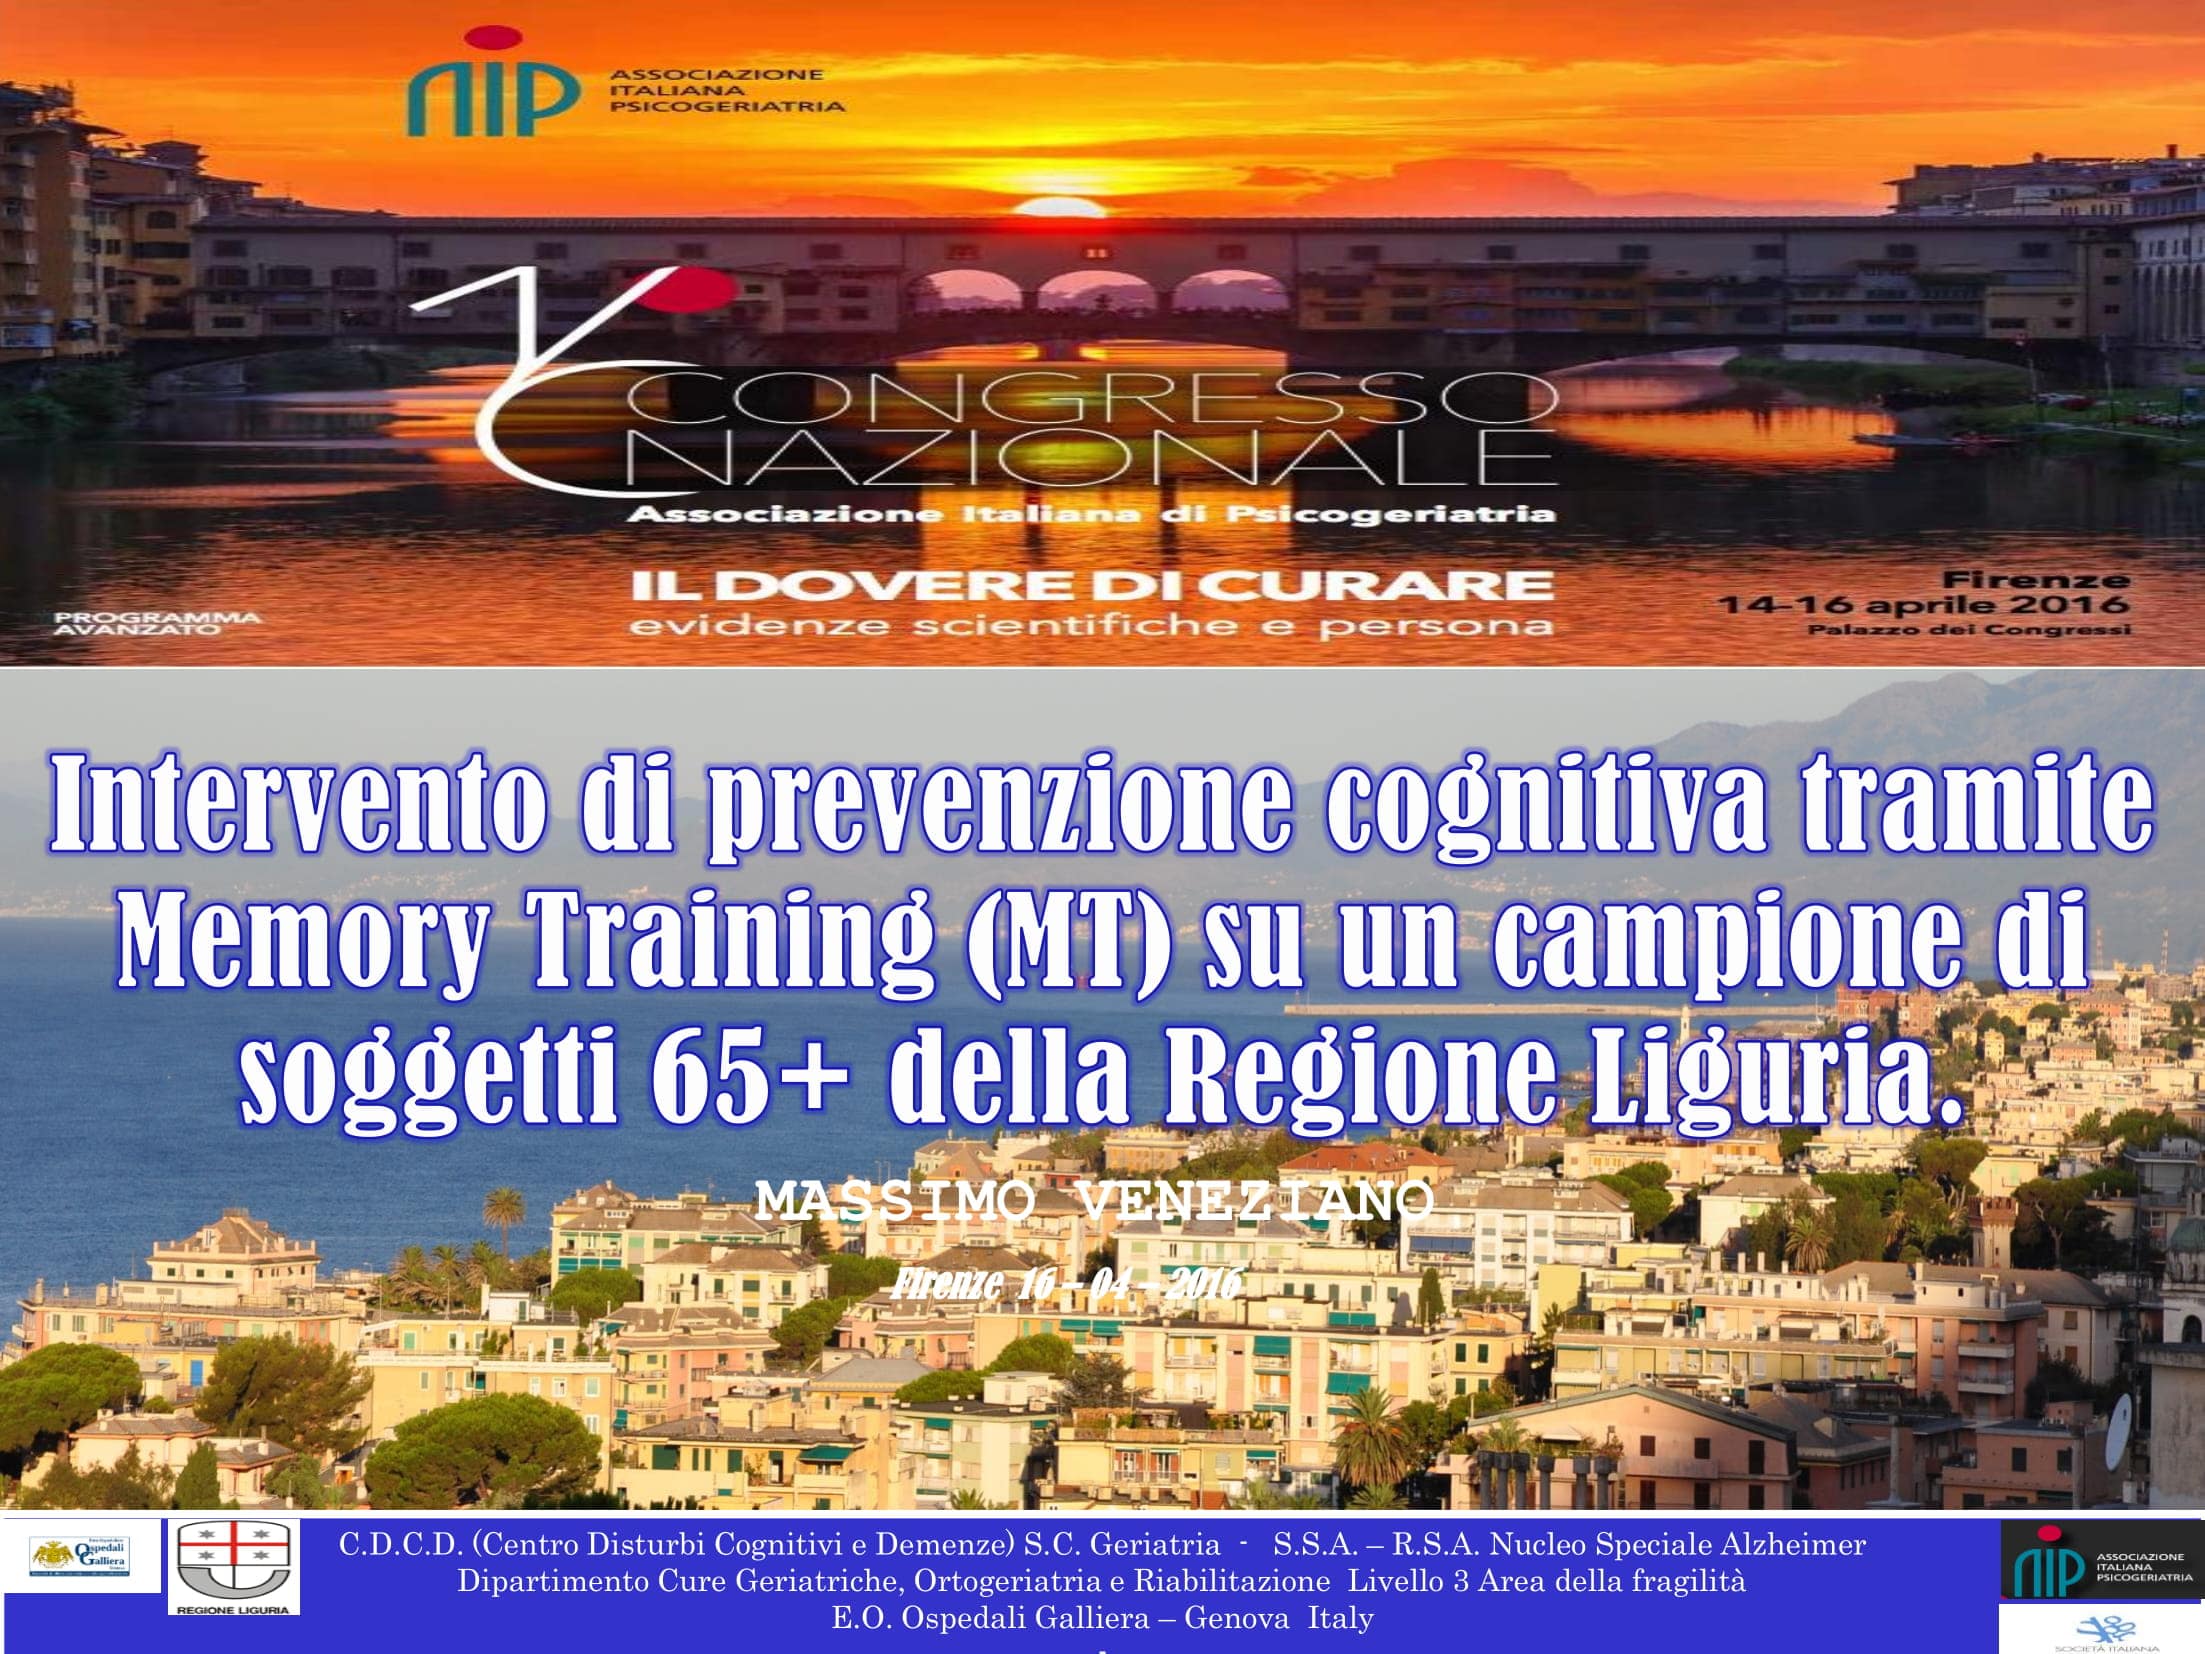 Intervento di prevenzione primaria cognitiva - relazione congresso AIP Firenze 2016